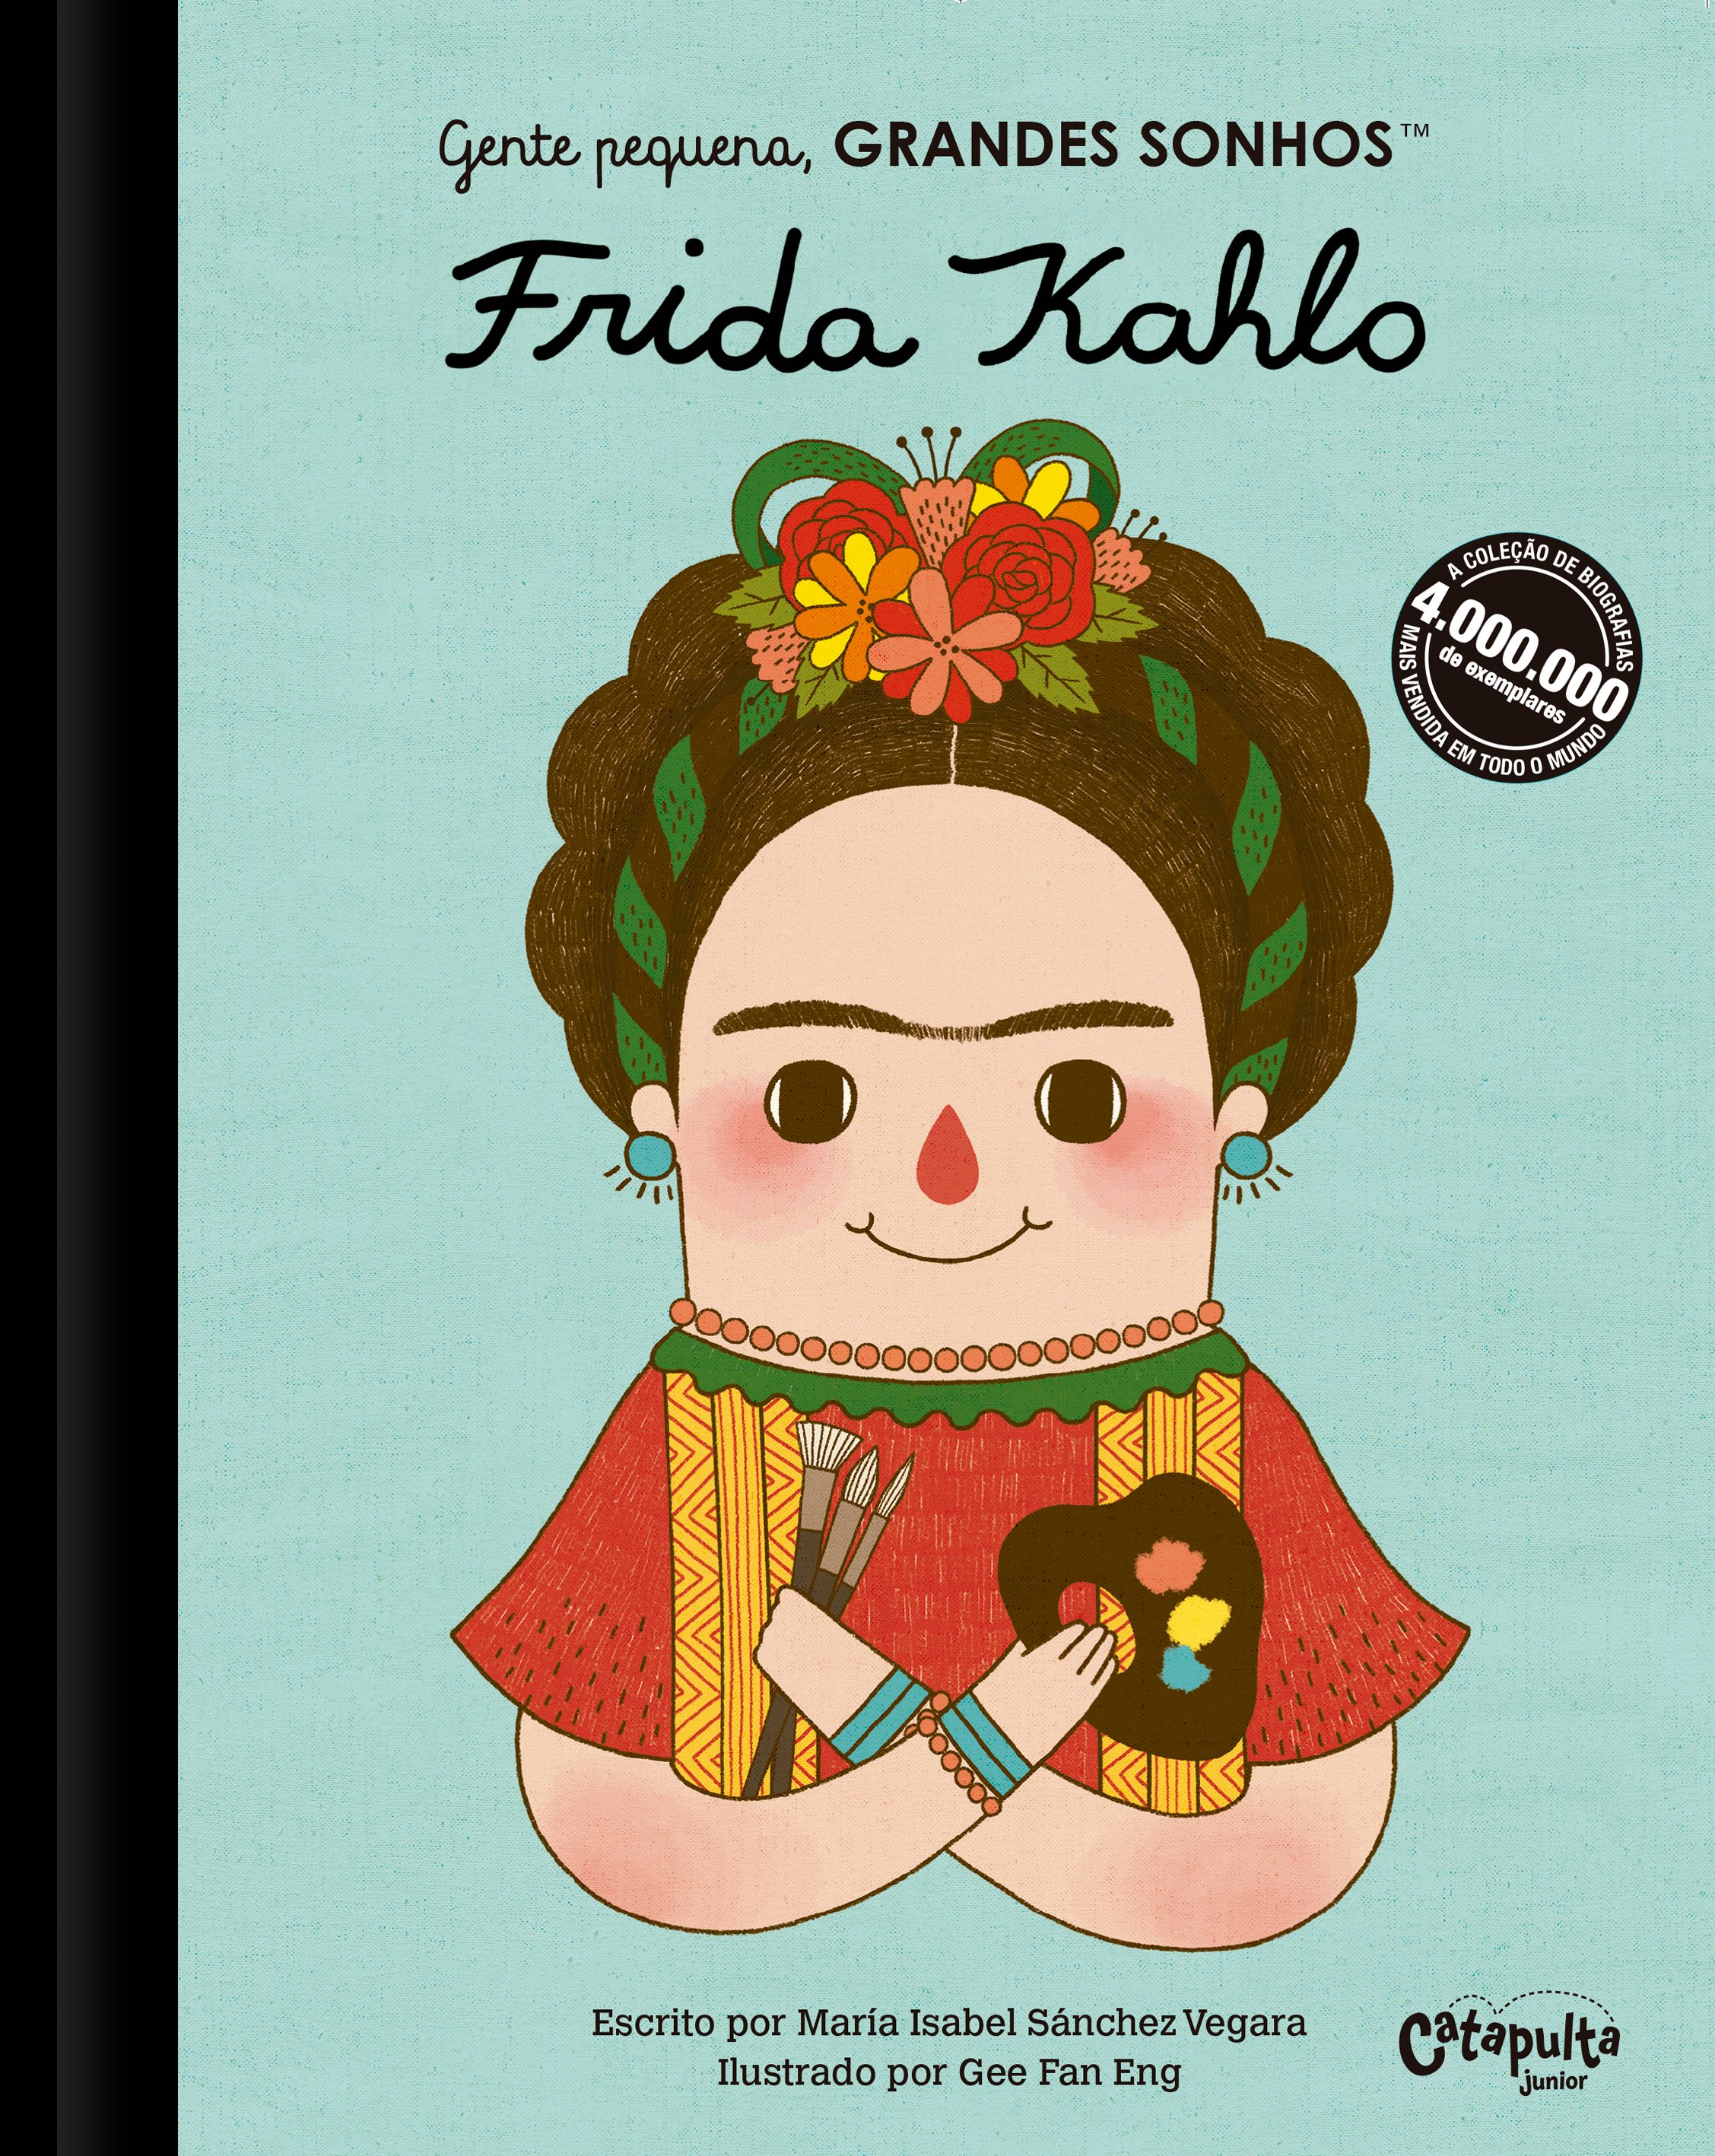 Gente Pequena, Grandes Sonhos - Frida Kahlo